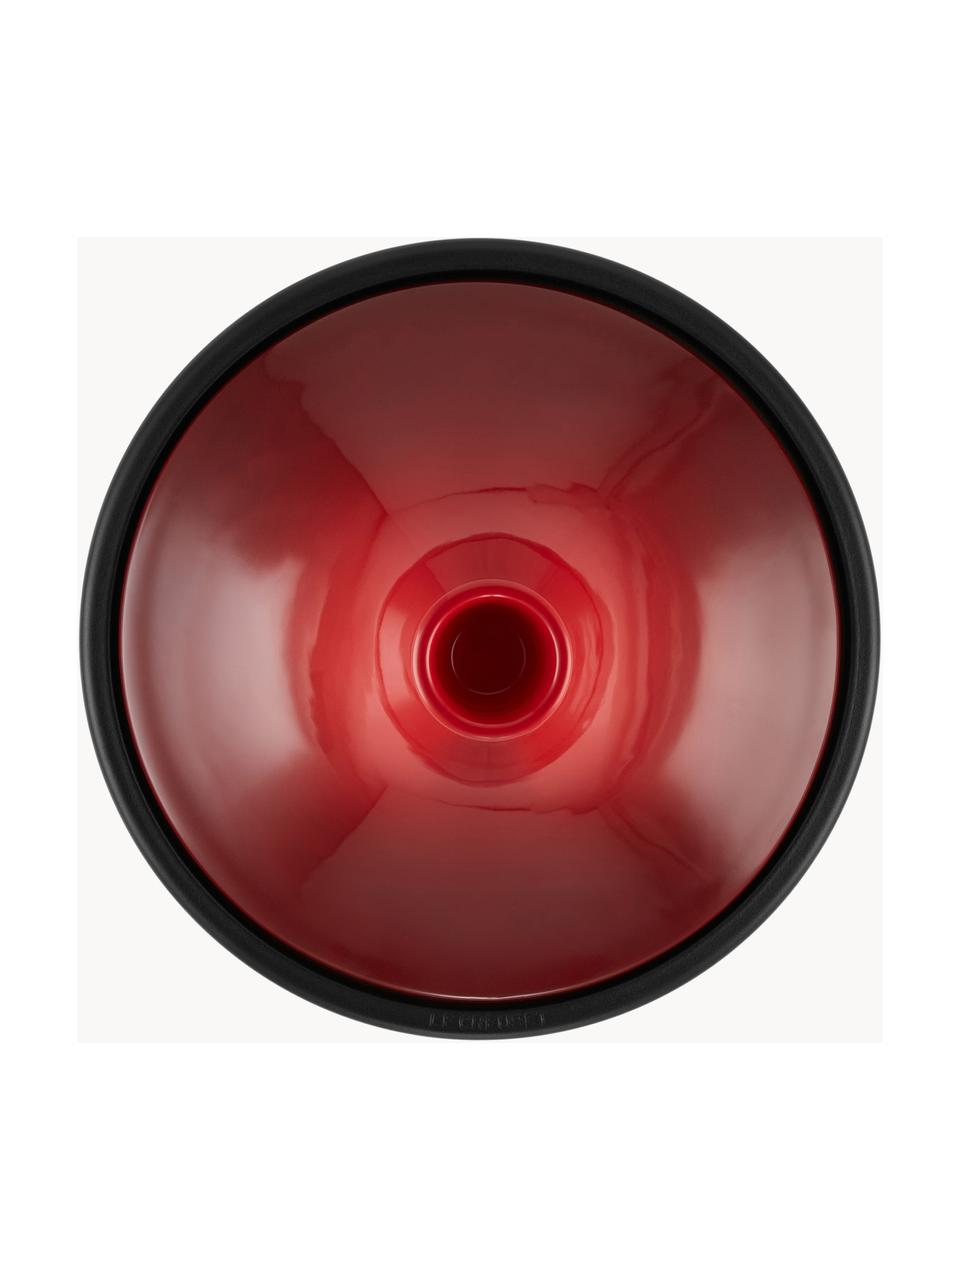 Tagine en fonte émaillée Creuset, Rouge, noir, Ø 32 cm, 3,7 L